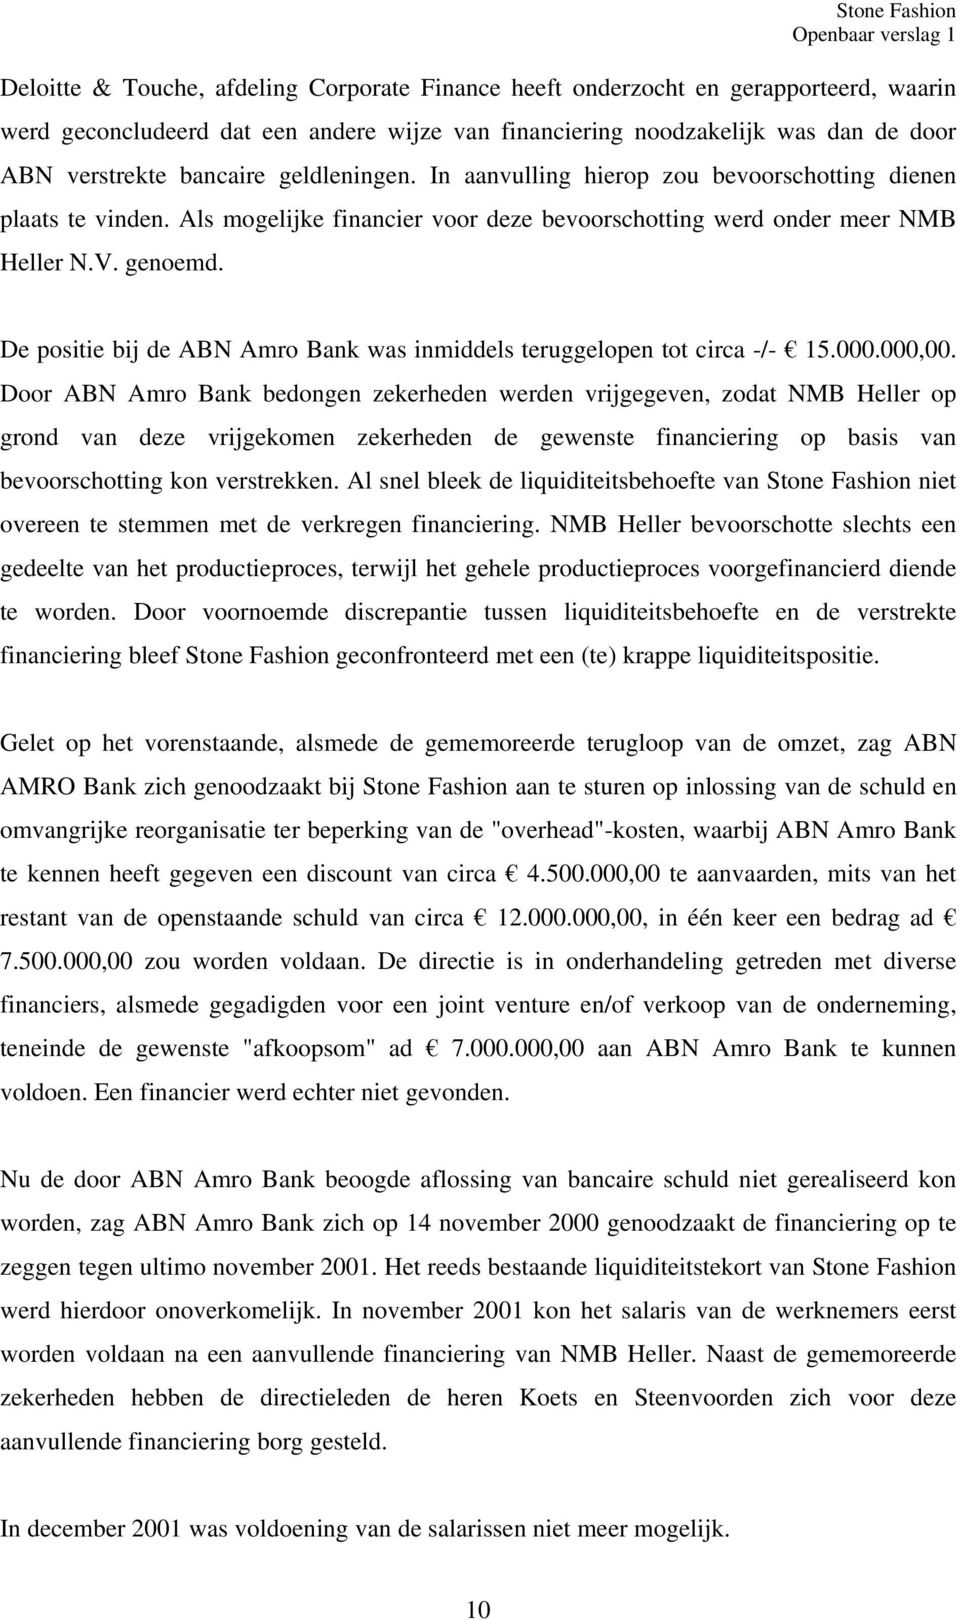 De positie bij de ABN Amro Bank was inmiddels teruggelopen tot circa -/- 15.000.000,00.